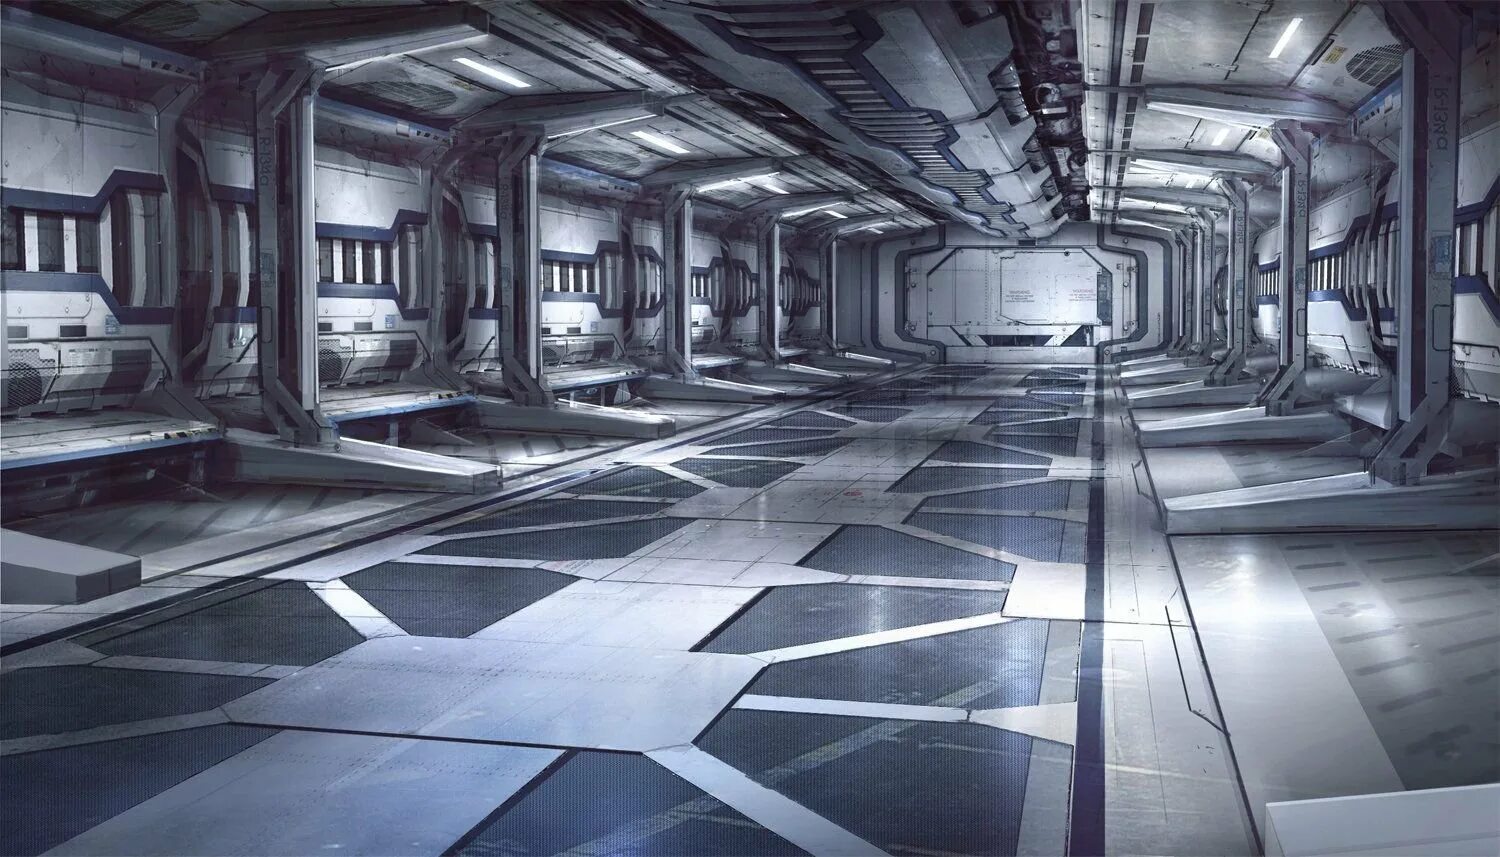 Полы будущего. Коридор космического корабля будущего Sci-Fi. Sci Fi коридор лаборатории. Концепт арт Sci Fi лаборатория. Концепт арт Sci Fi Interior.